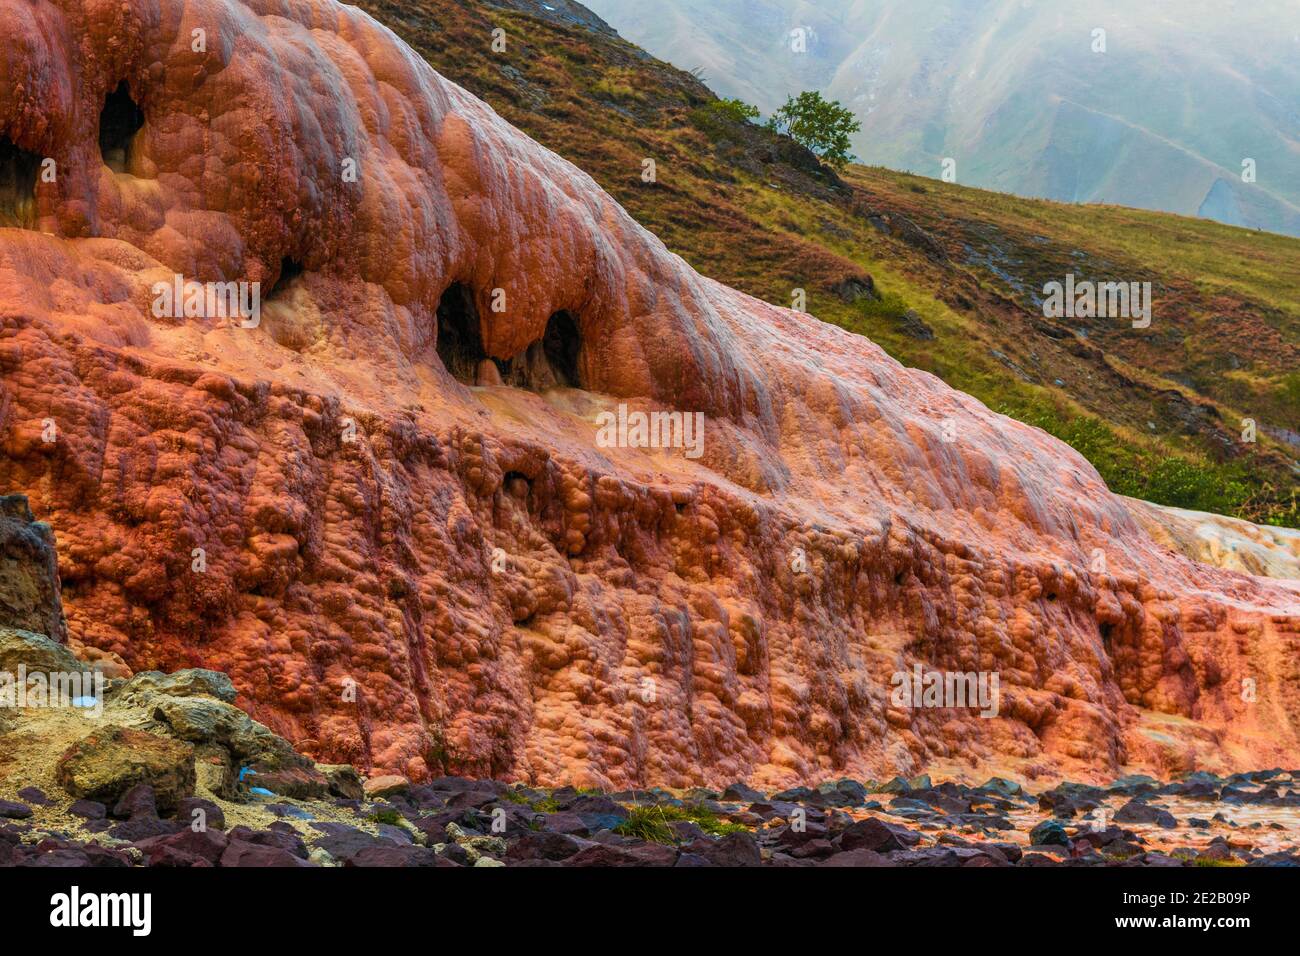 Brauner, oranger Sandstein, der Wasser bildete, fließt noch Wasser durch ihn. Eine Art Karstphänomen auf dem Pass Jvari im Norden Georgiens. Kazbegi Natur Stockfoto